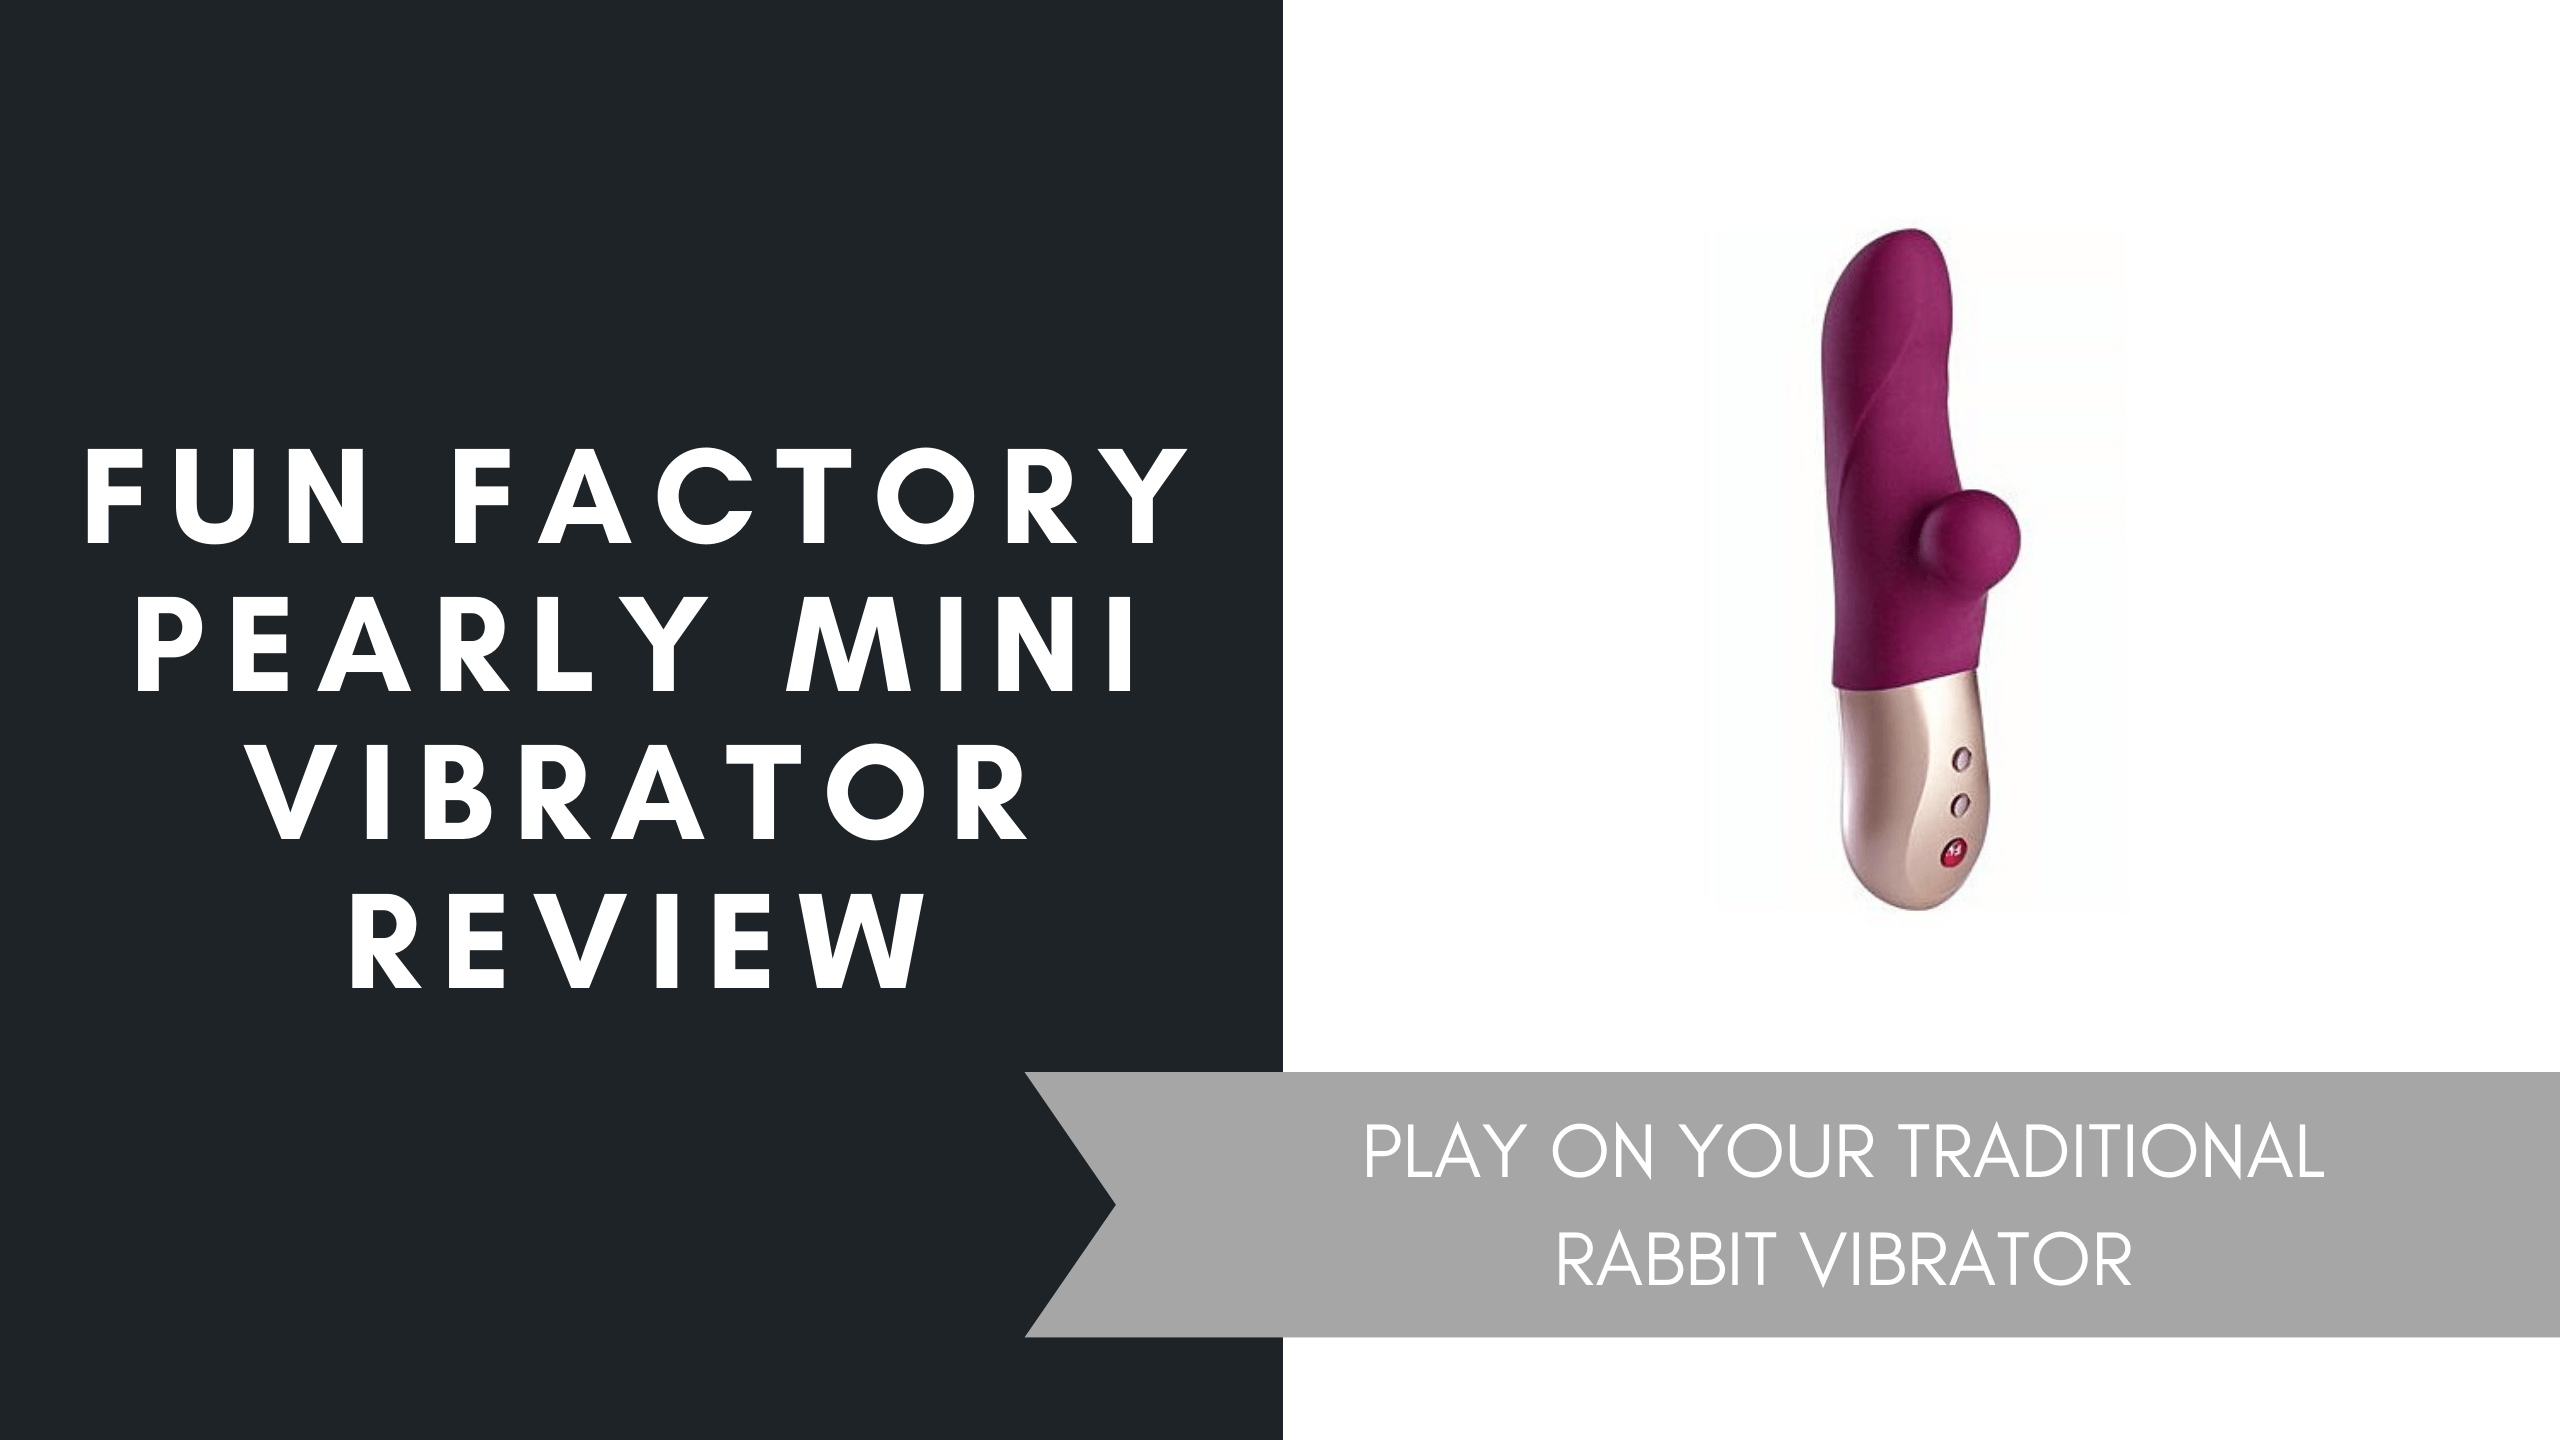 Fun Factory Pearly Mini Vibrator July 2021